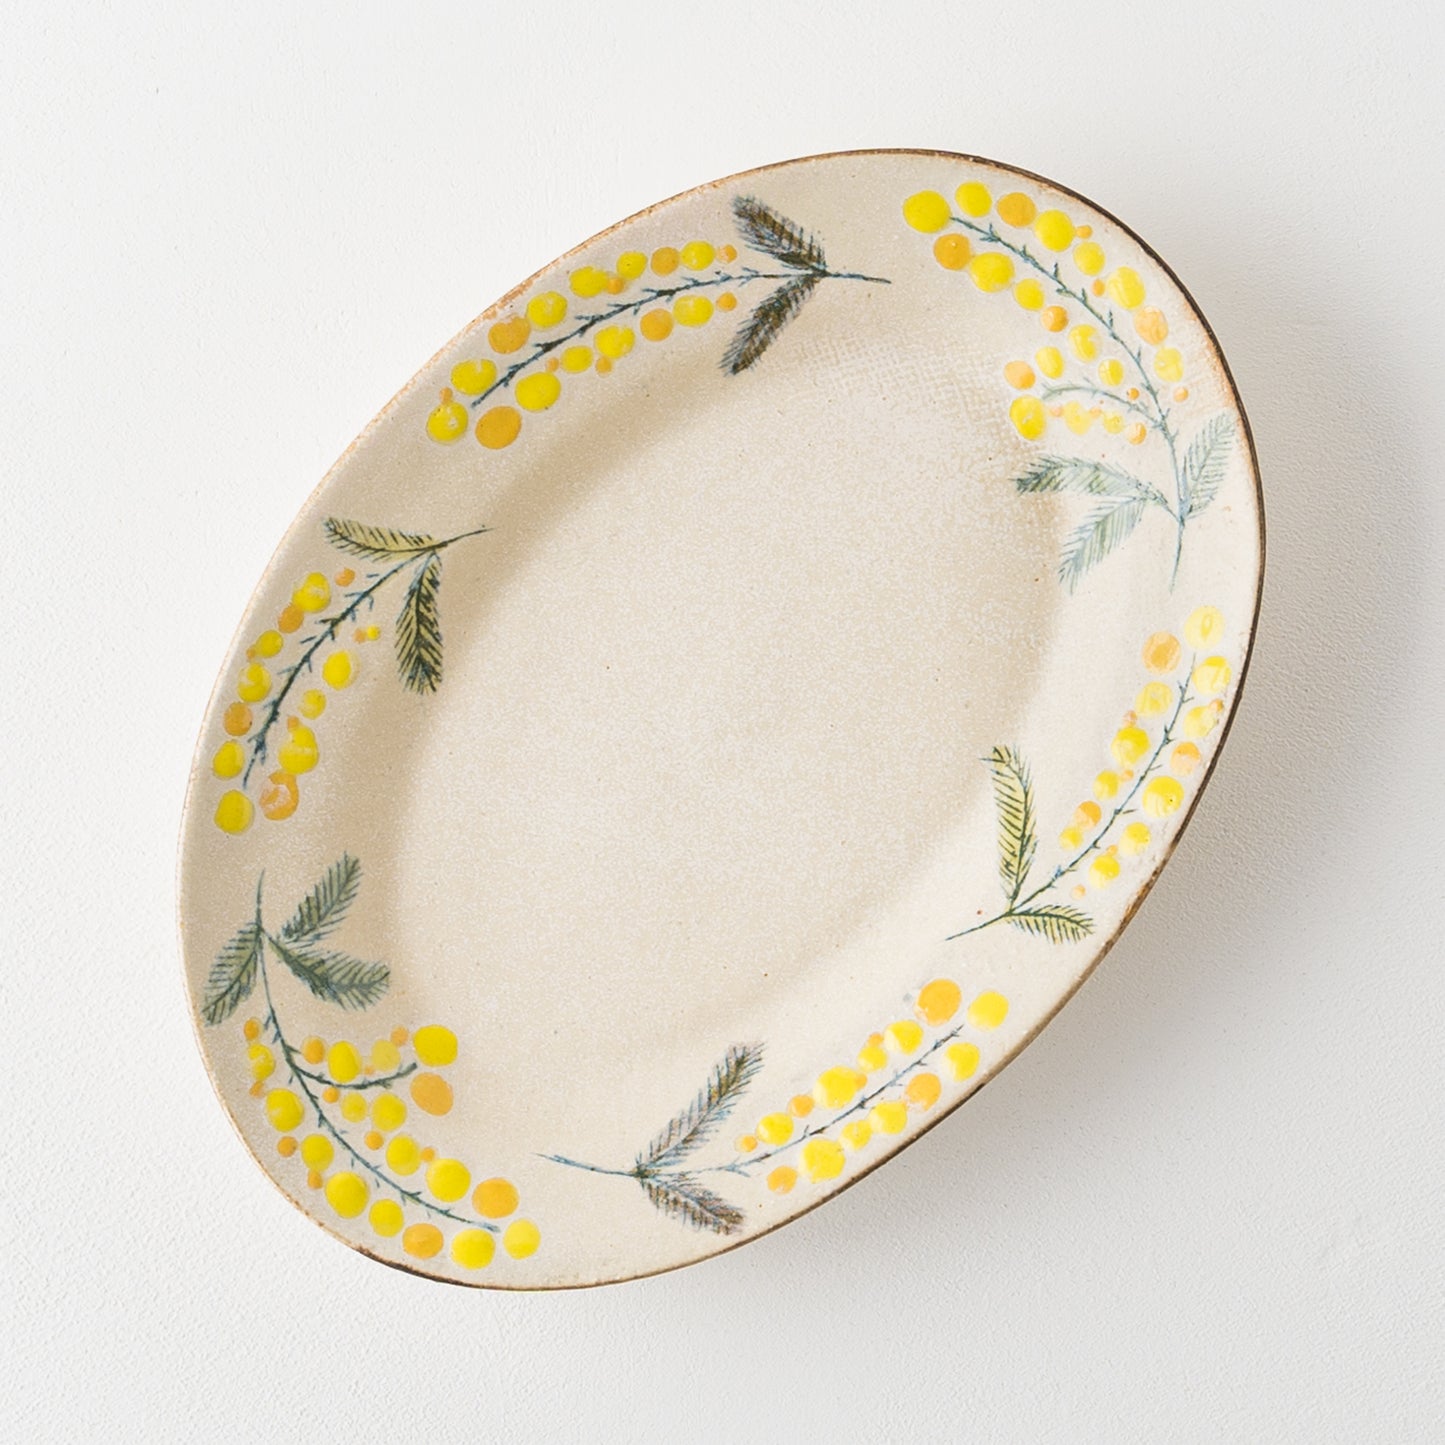 ミモザがおしゃれで可愛い森野奈津子さんの楕円リム皿